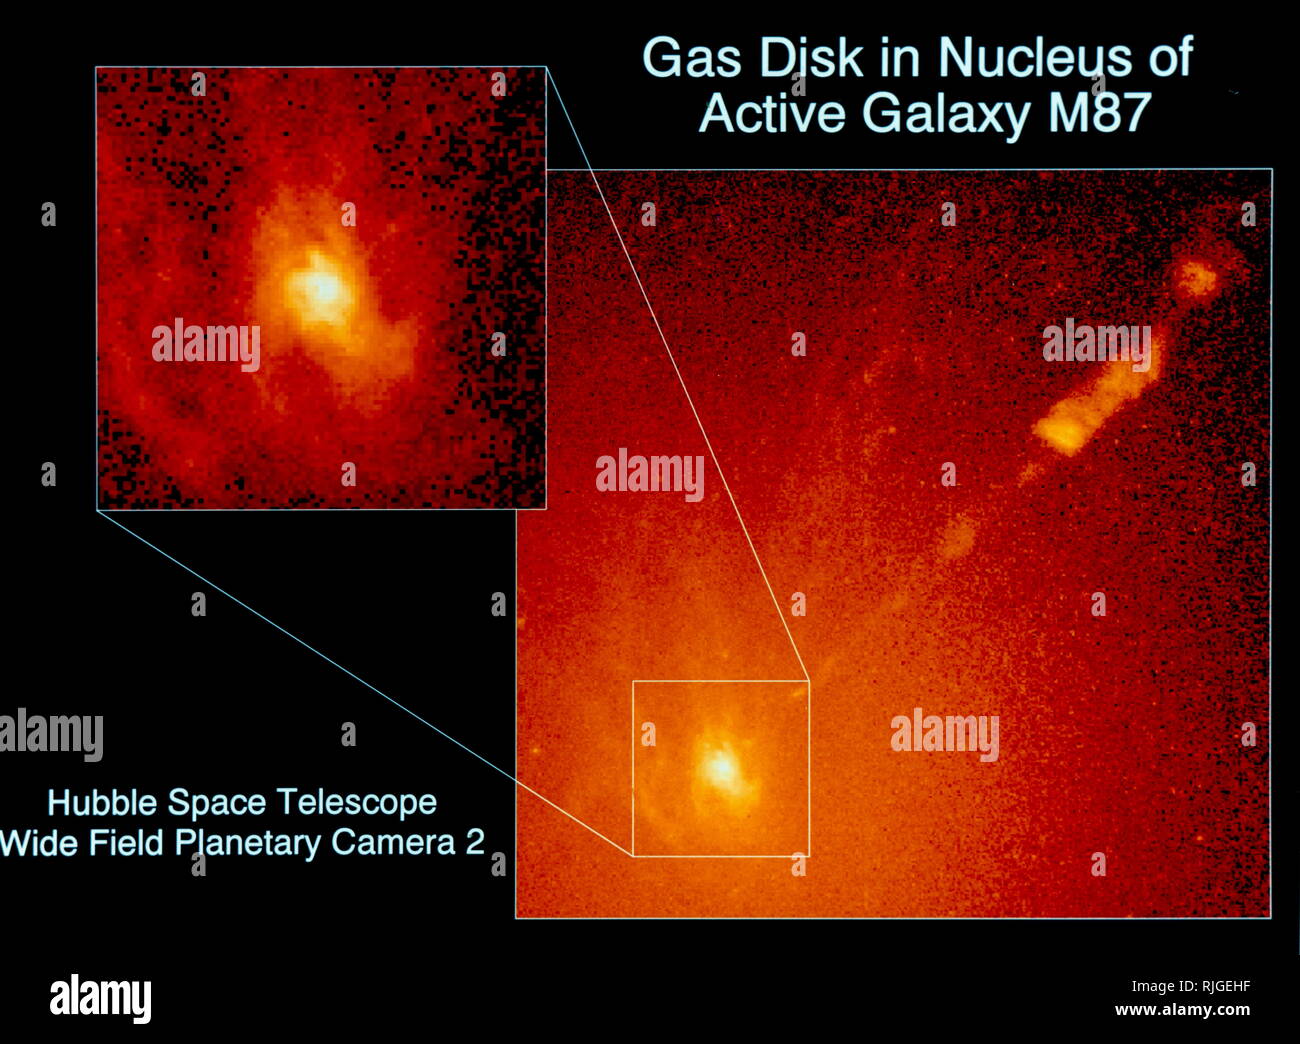 Telescopio Spaziale Hubble immagine raffigurante un disco di gas nel nucleo della galassia M87. Un NASA Hubble Space Telescope immagine di una spirale a forma di disco di gas caldo nel nucleo della galassia attiva M87. Le misurazioni di TRASMISSIONE IDROSTATICA mostra il disco rotante è così rapidamente che contiene un buco nero massiccio al proprio mozzo. Un buco nero è un oggetto che è così massiccia eppure compatta nulla può sfuggire alla sua forza gravitazionale, neppure la luce. L'oggetto al centro di M87 si adatta a tale descrizione. Pesa quanto più di tre miliardi di suns, ma è concentrata in uno spazio non più grande di quella del nostro sistema solare. Foto Stock